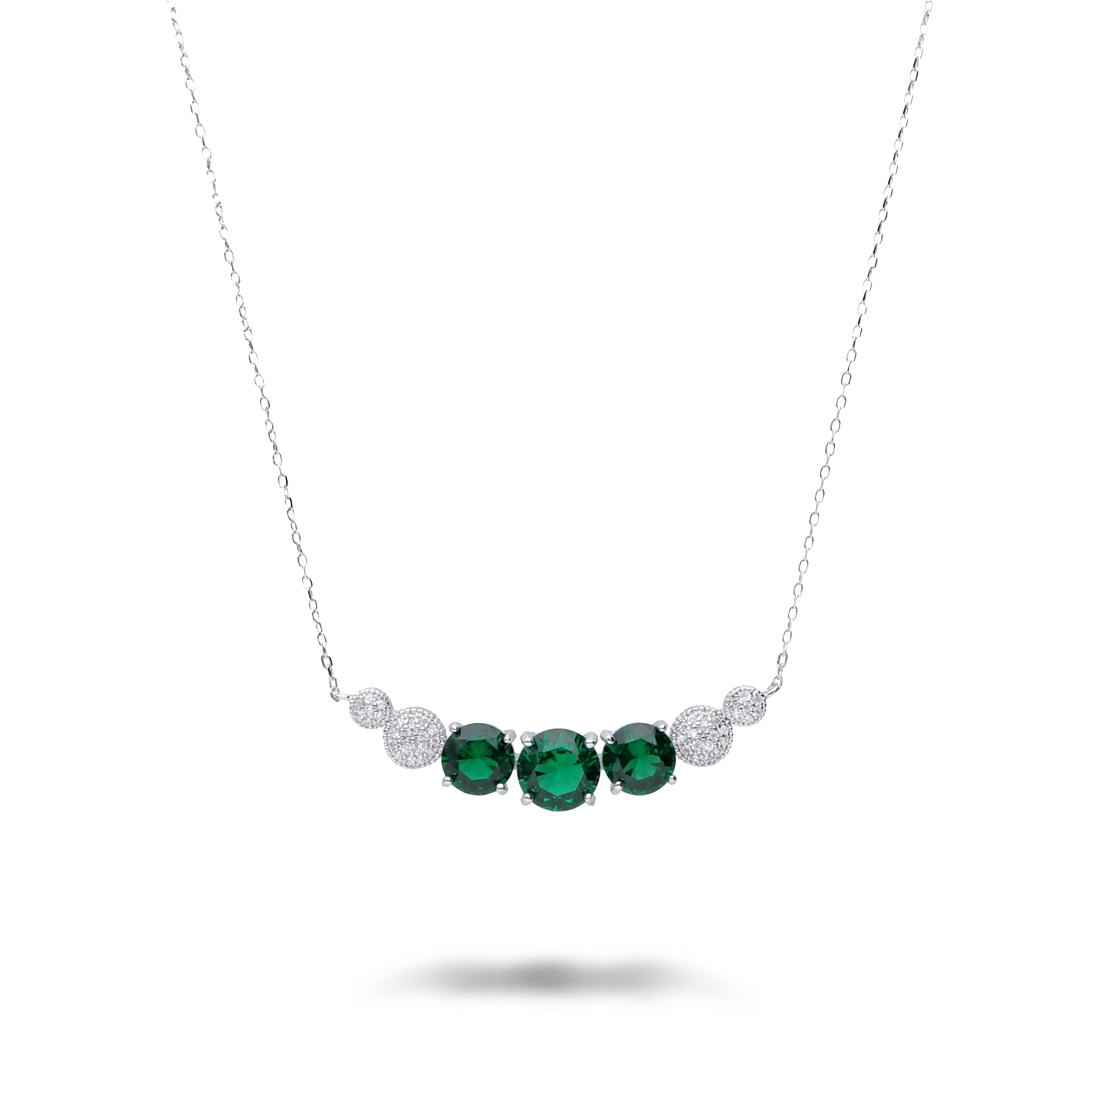 Collar de plata con piedras verdes y blancas - ORO&CO 925